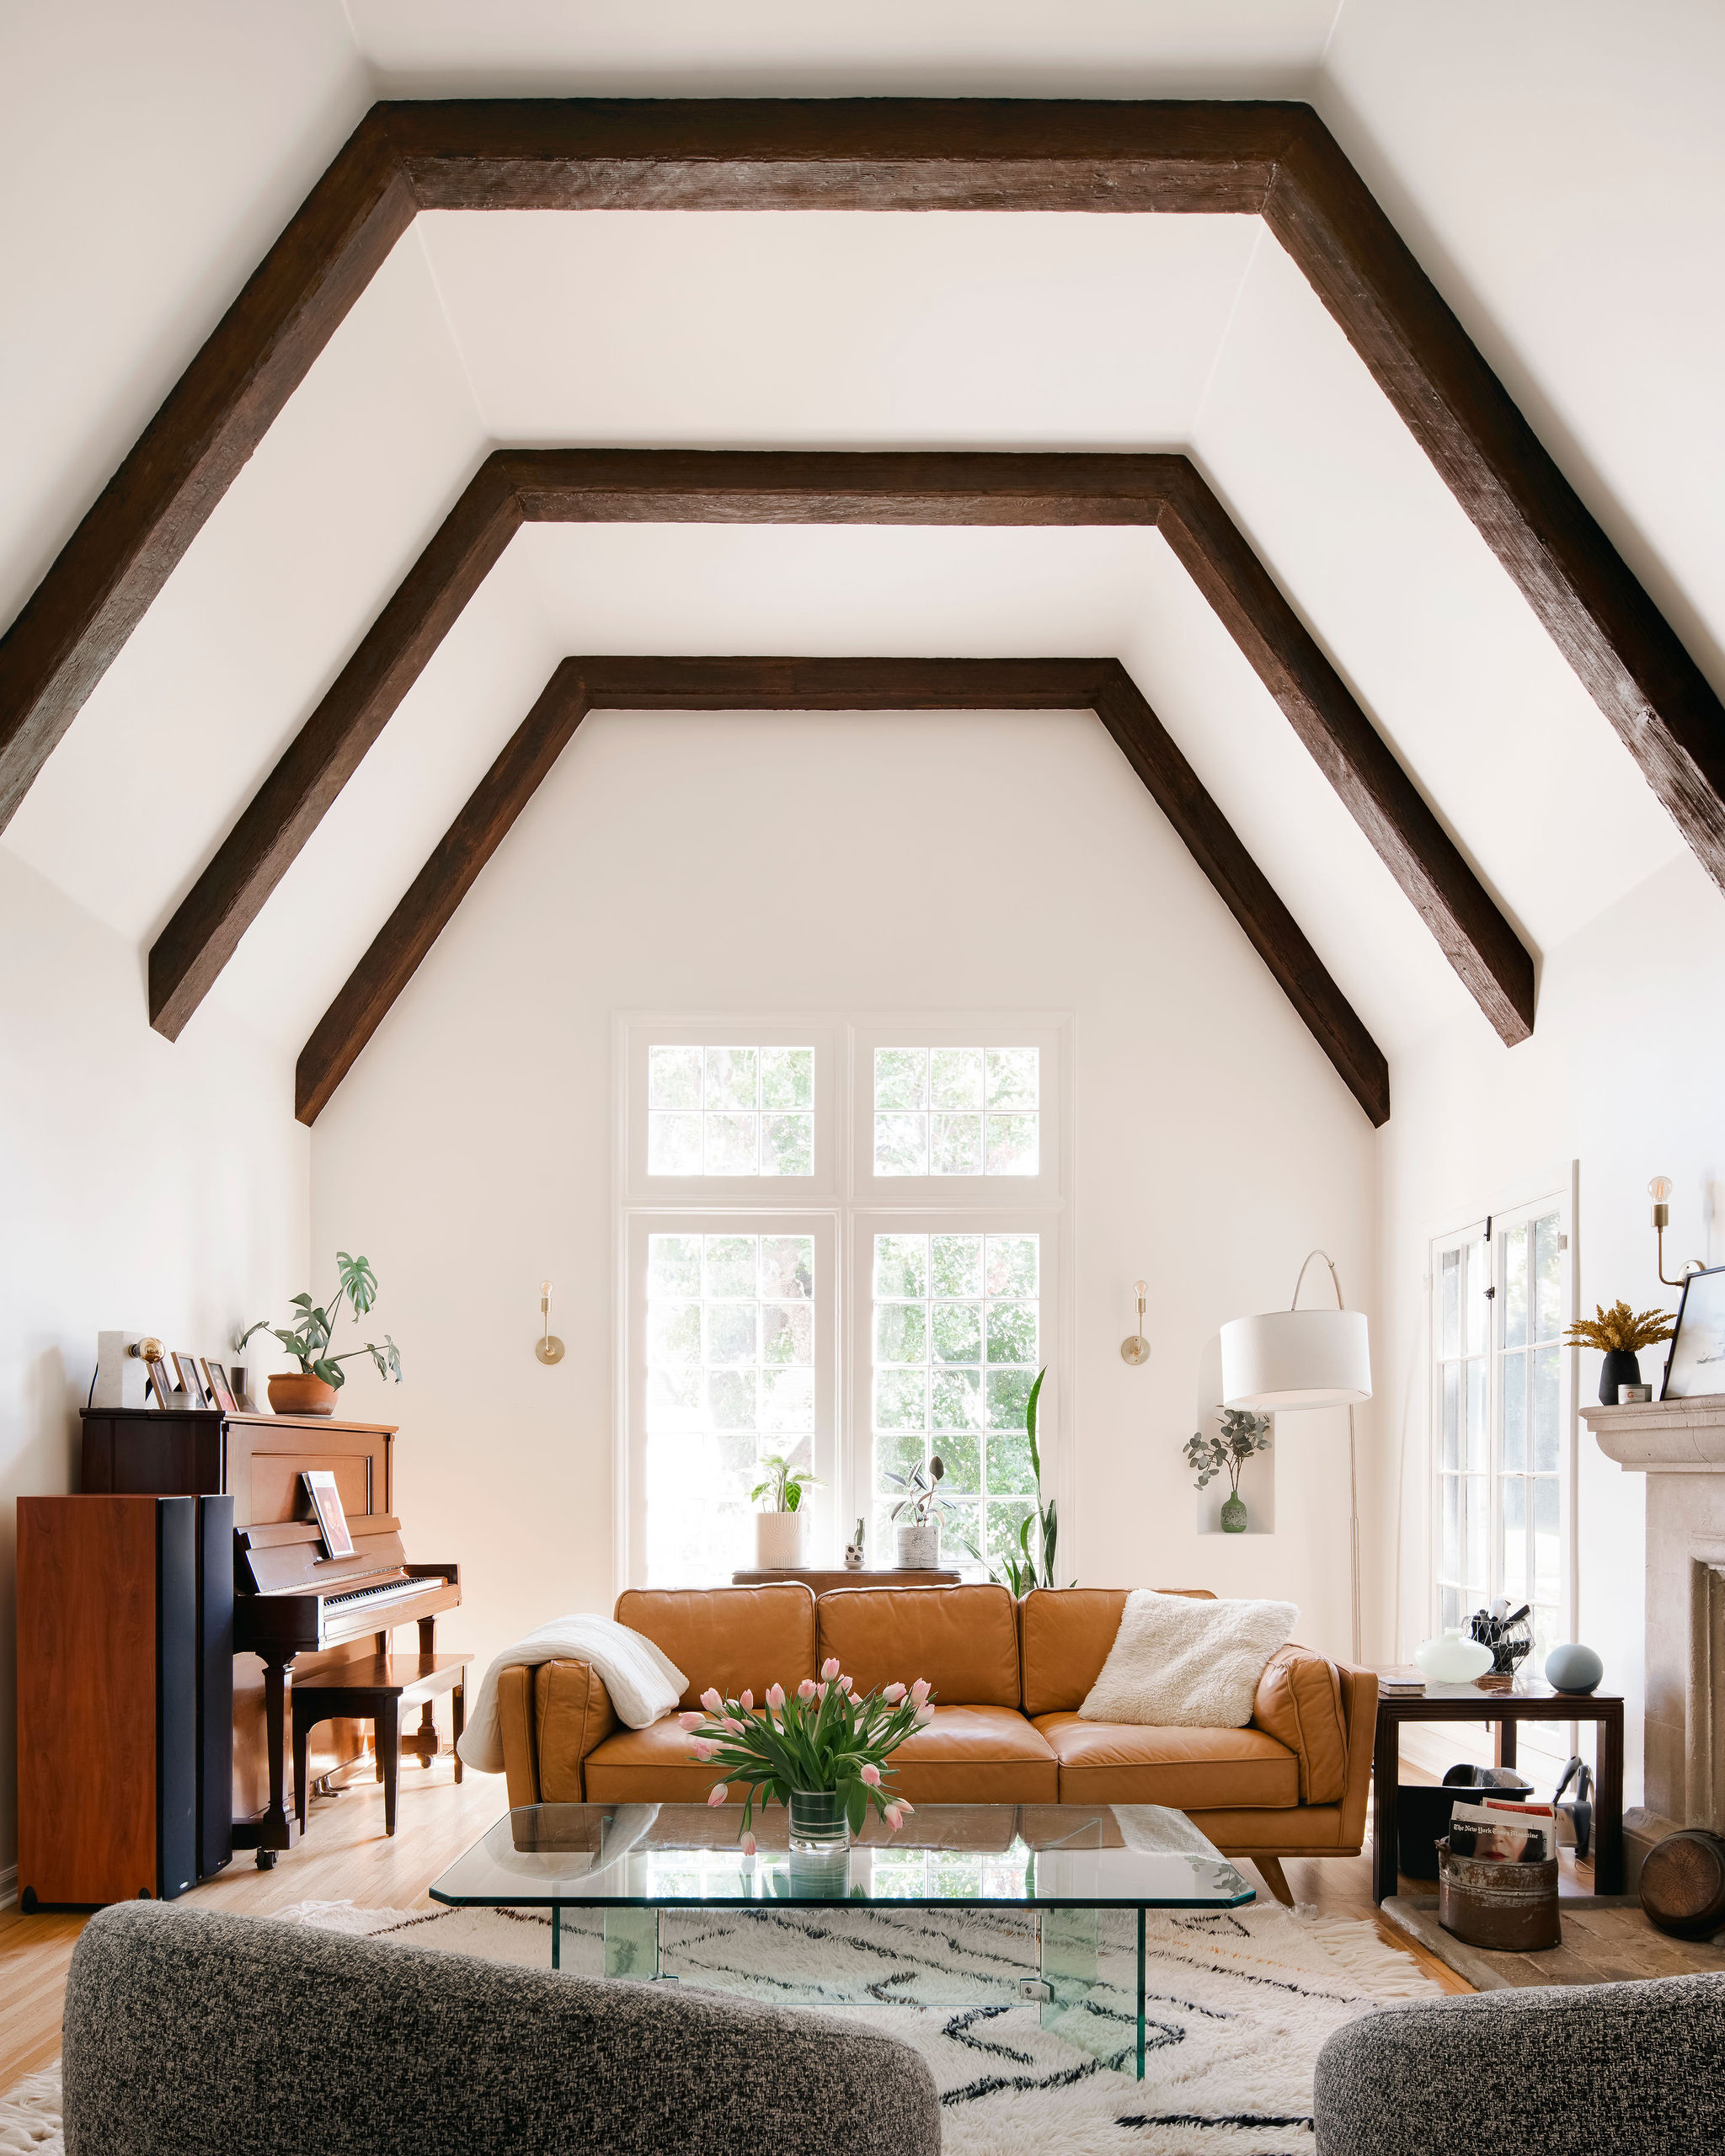 Tudor Living Room Ceiling